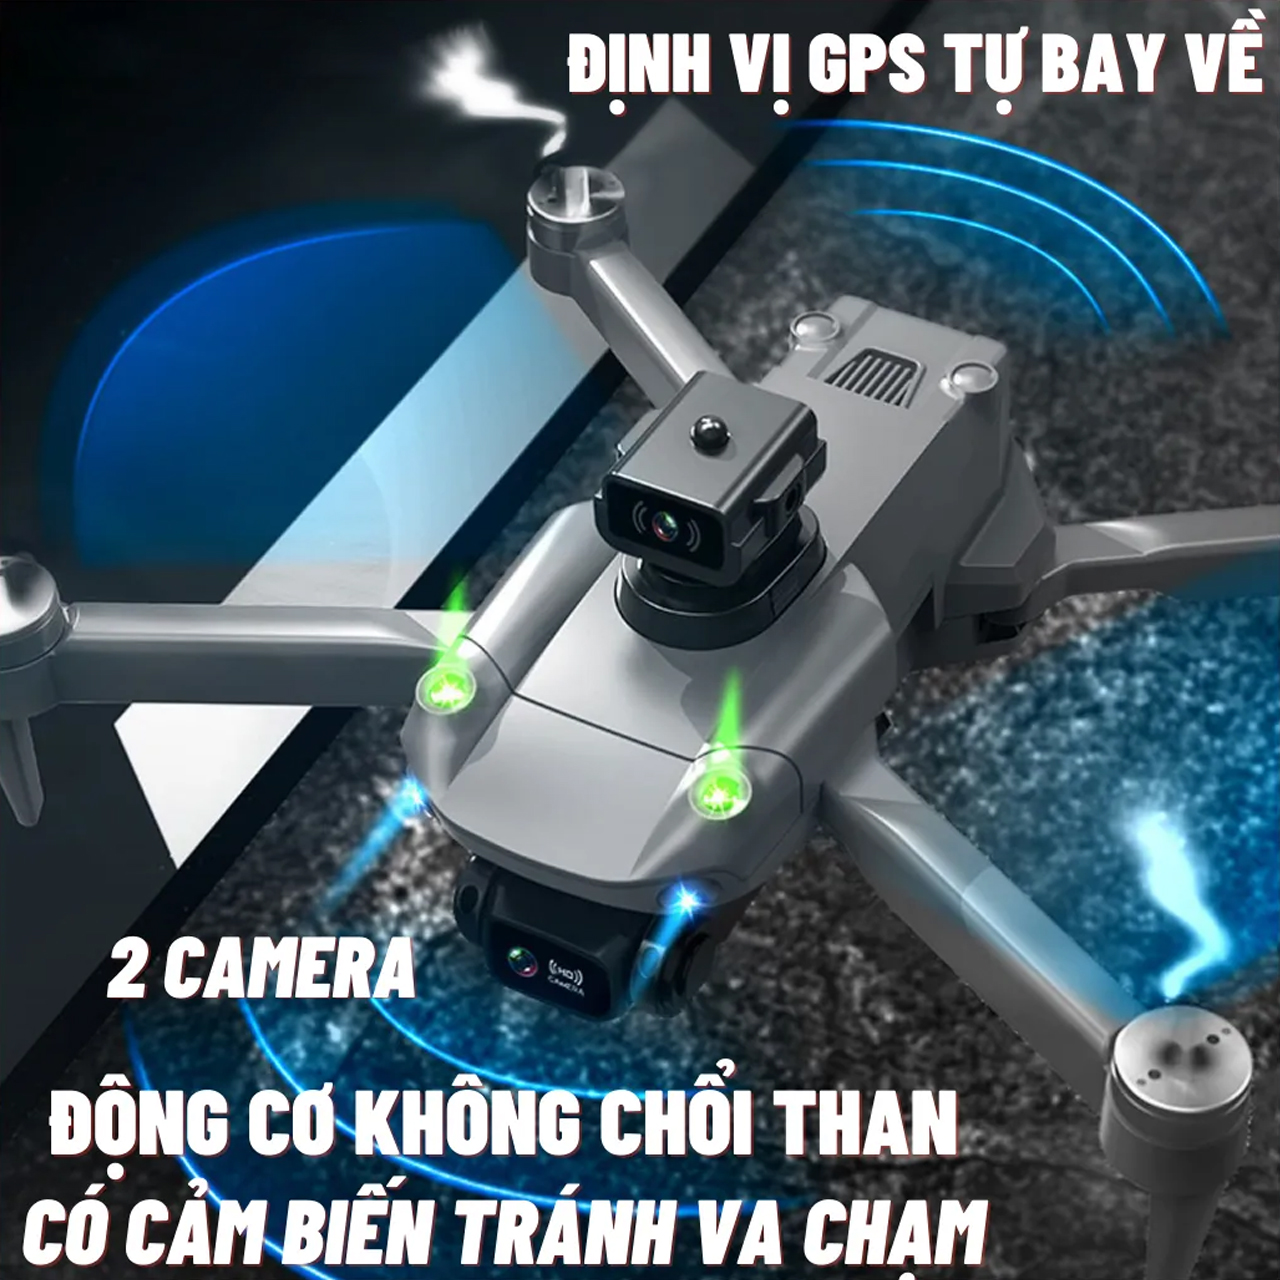 Flycam mini giá rẻ K998 có camera kép 4K HD cảm biến tránh vật cản chướng ngại vật 4 chiều máy bay điều khiển từ xa drone S11 Pro thời gian bay 25 phút G.P.S tự quay trở về động cơ không chổi than, truyền hình ảnh trực tiếp về điện thoại - hàng chính hãng